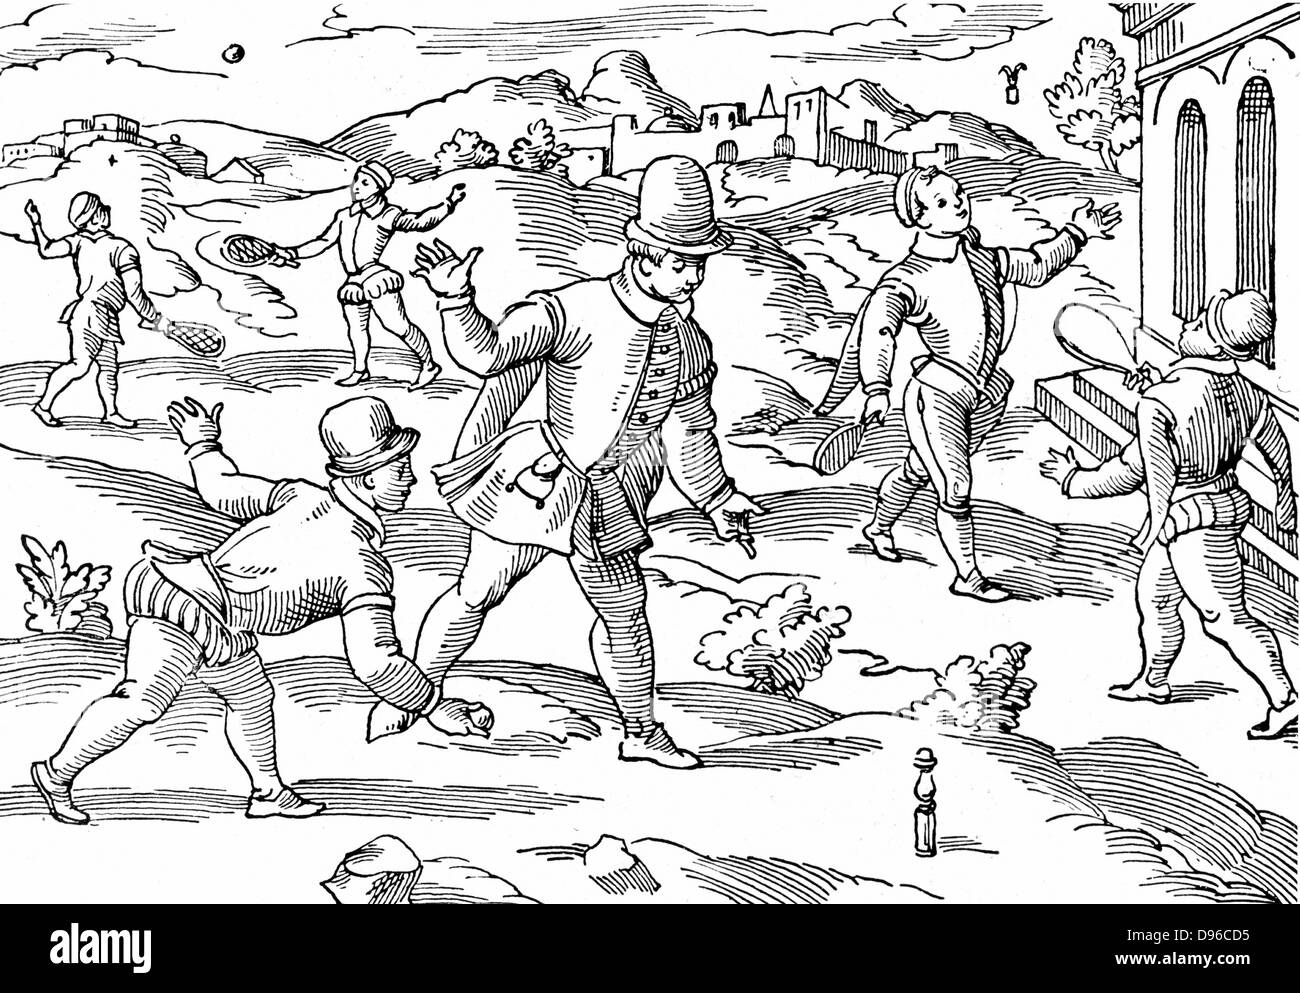 Juegos infantiles en el siglo XVI: en primer plano los chicos son una forma de jugar a los bolos, a la derecha, la izquierda shuttlecock fondo jugando a la pelota con la encuerda raquetas. Xilografía. Foto de stock